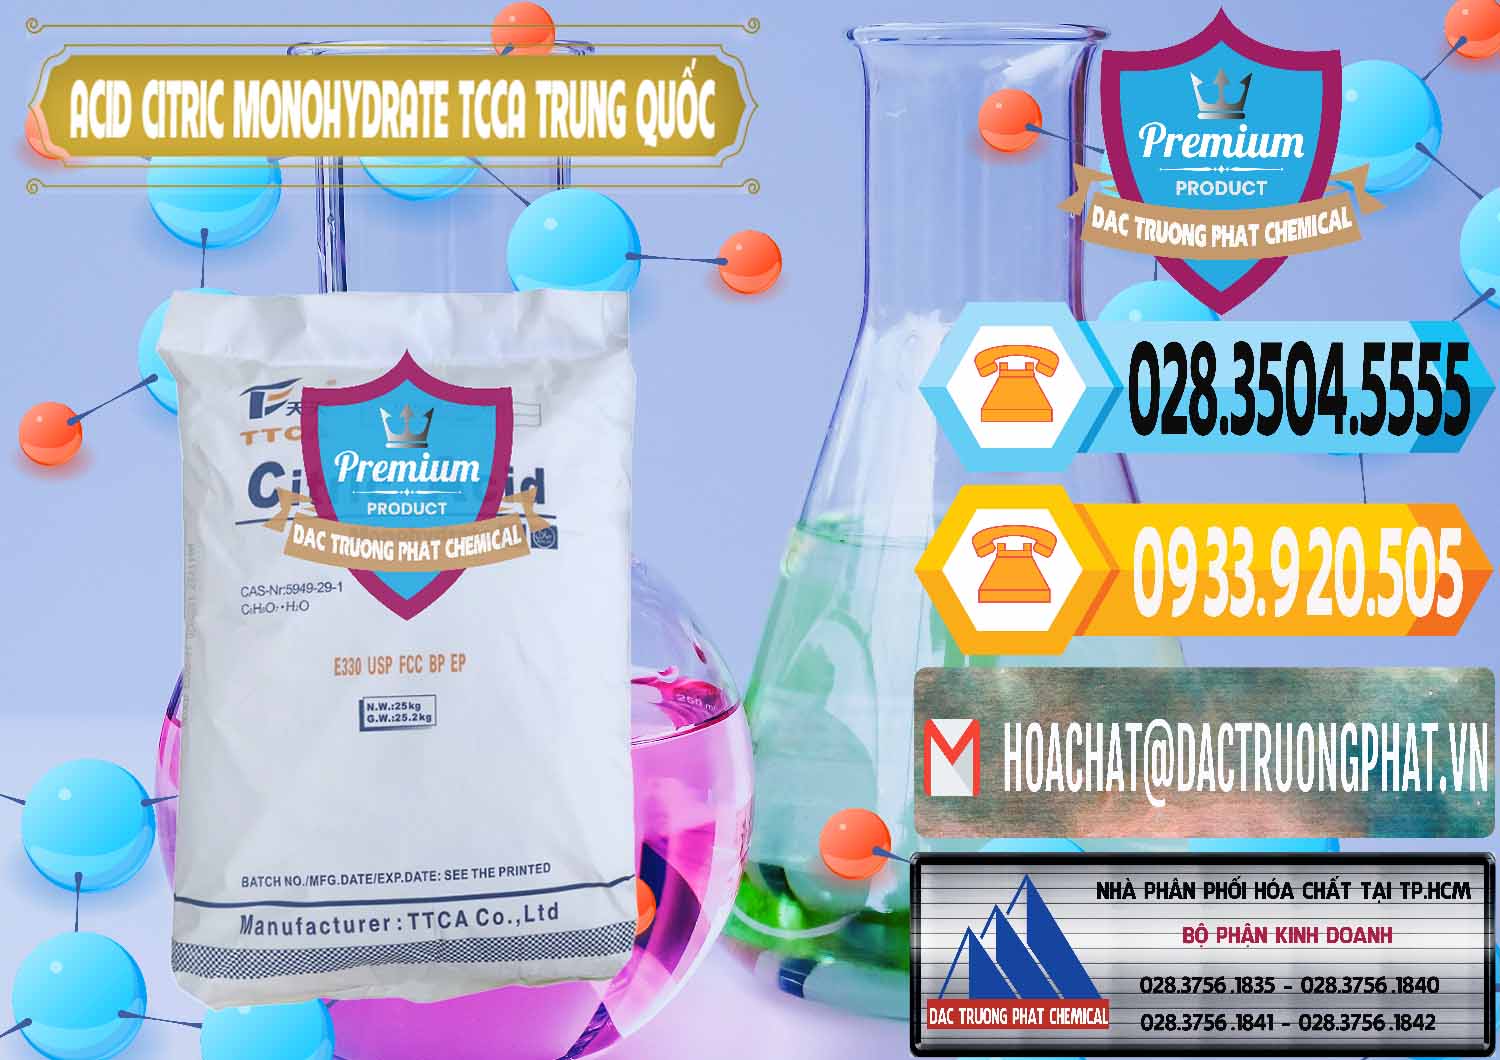 Cty bán ( cung cấp ) Acid Citric - Axit Citric Monohydrate TCCA Trung Quốc China - 0441 - Đơn vị phân phối và cung cấp hóa chất tại TP.HCM - hoachattayrua.net